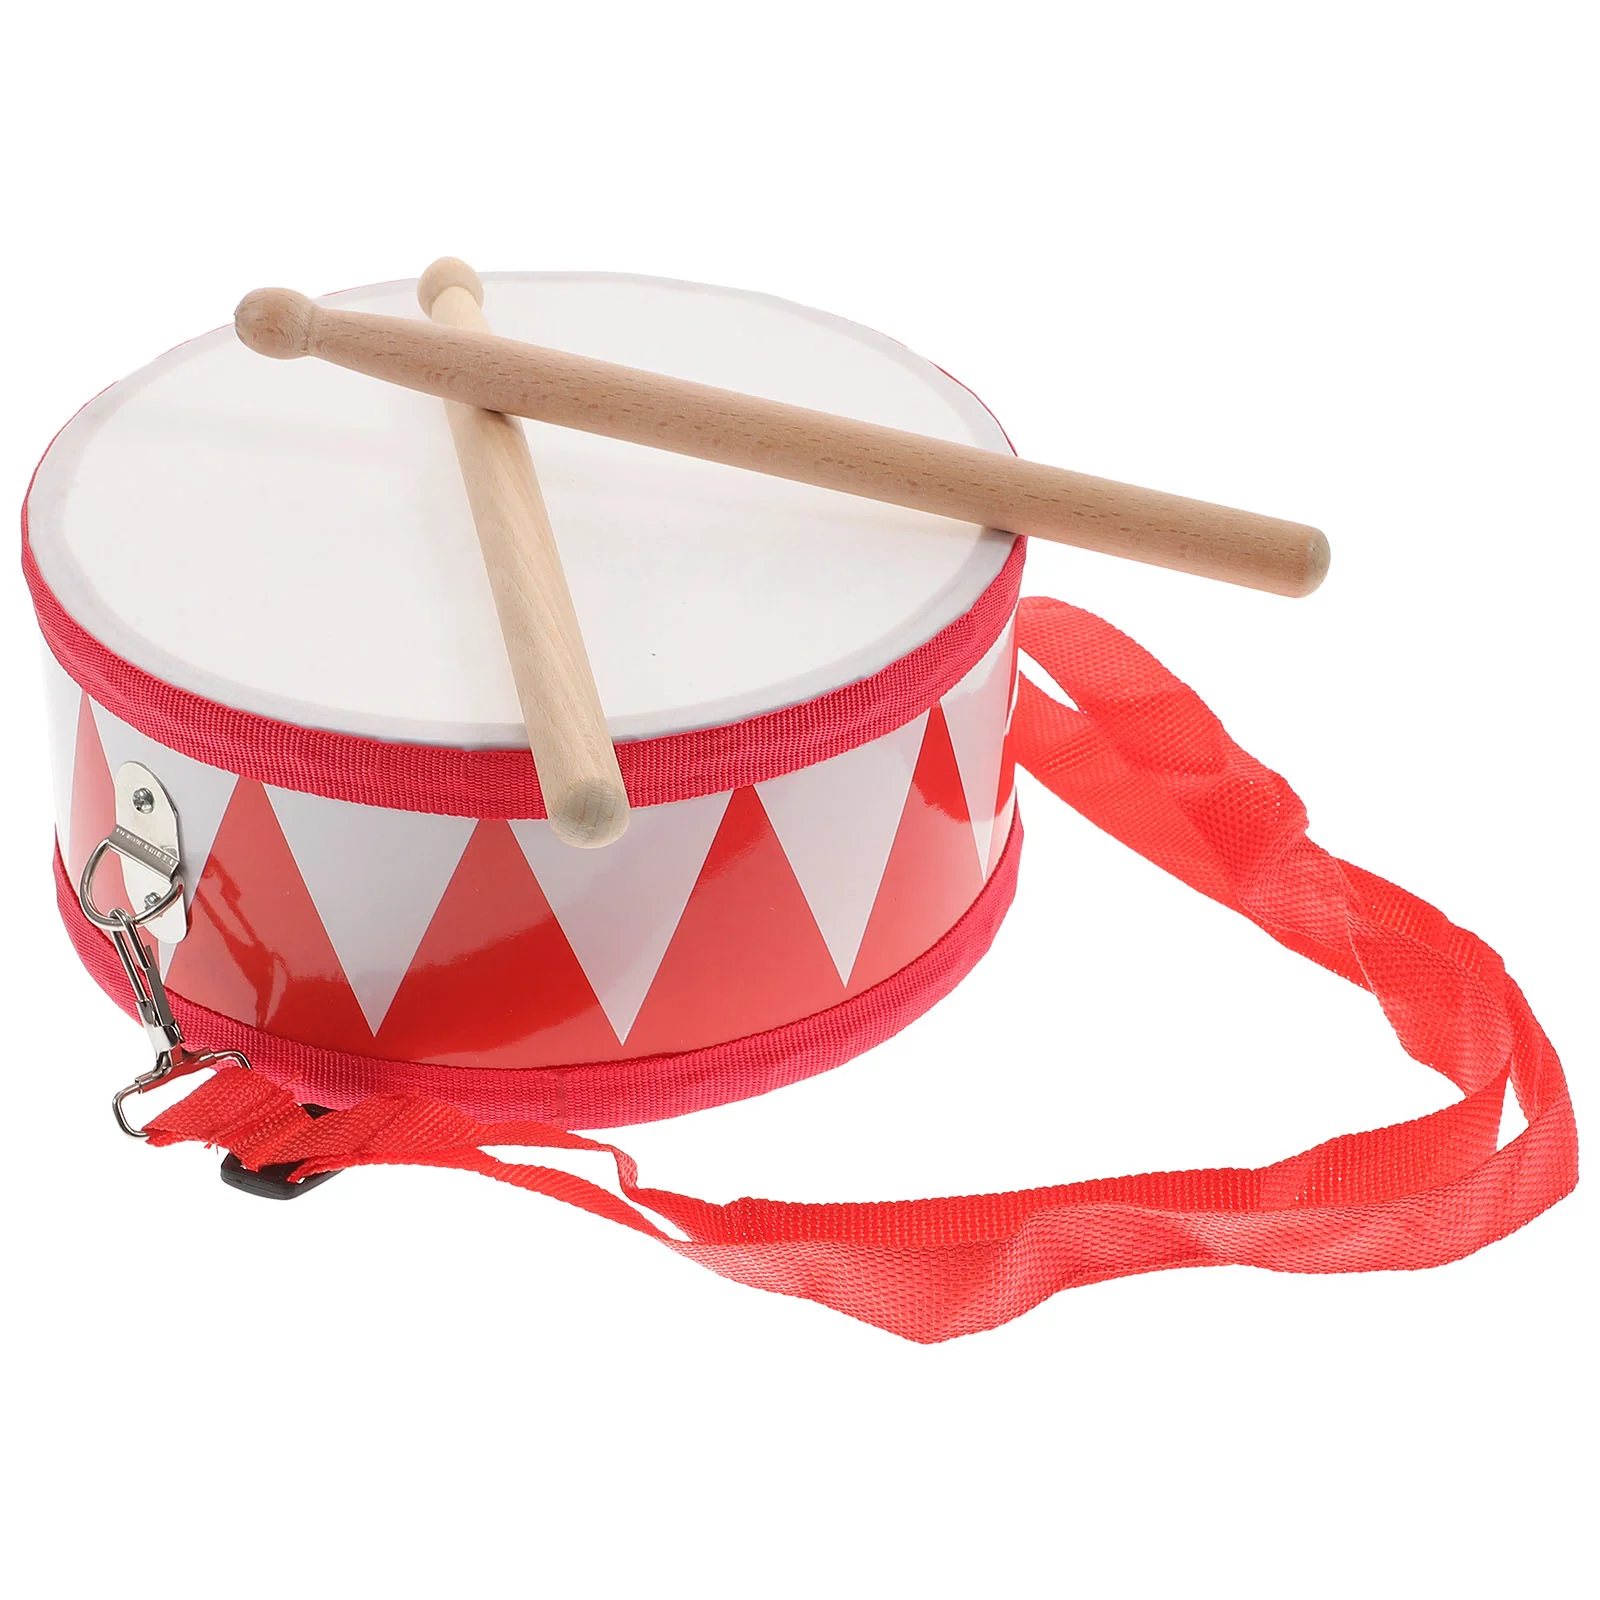 

Музыкальная ударная игрушка Snare, детские игрушки, обучающий барабан, деревянные инструменты